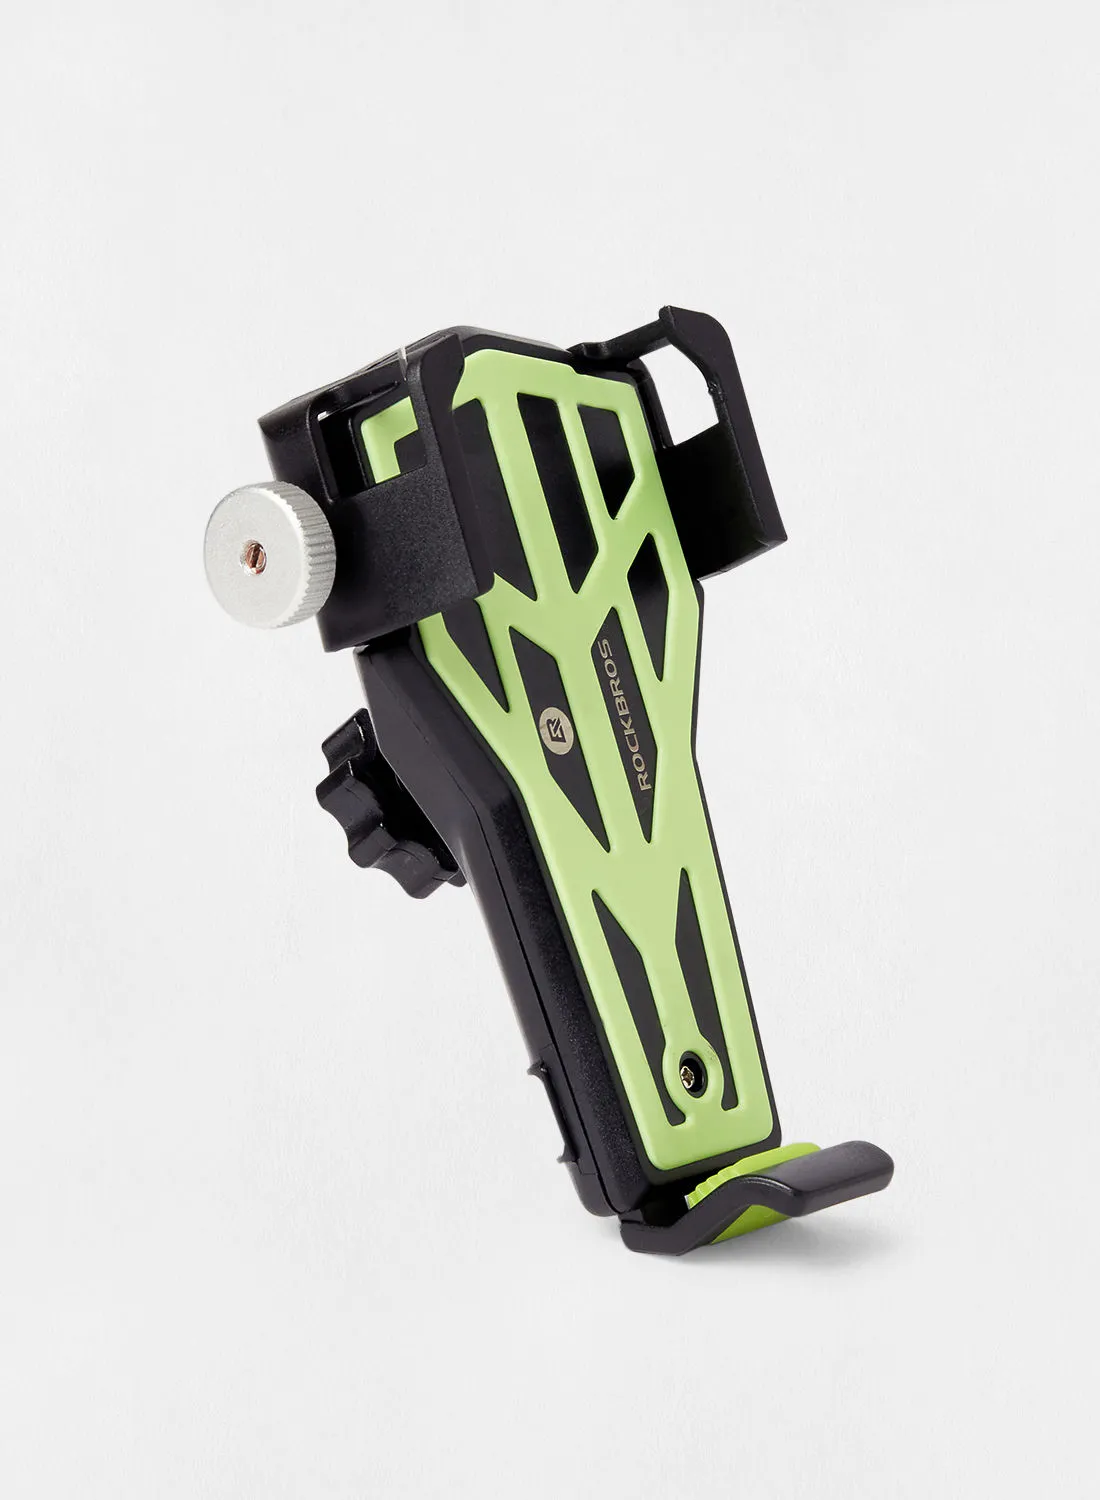 Athletiq Stylish Aluminium Bicycle Phone Holder 15 x 10 x 8cm